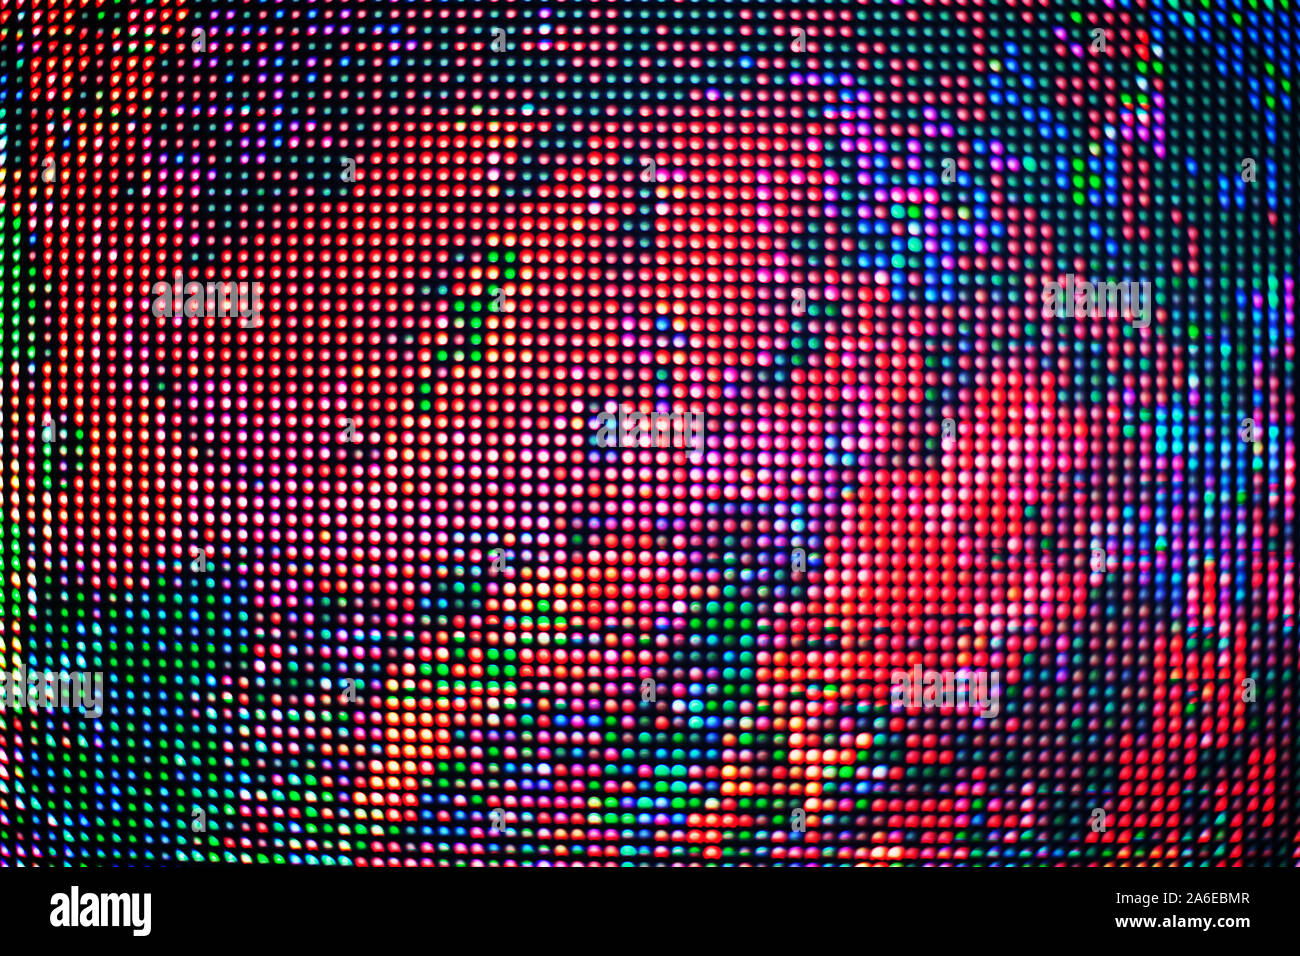 Résumé des points colorés parsemés texture background, beaucoup de rouge, bleu, vert, noir neon light Toile points ronde, ornement floral décoratif, le motif Banque D'Images